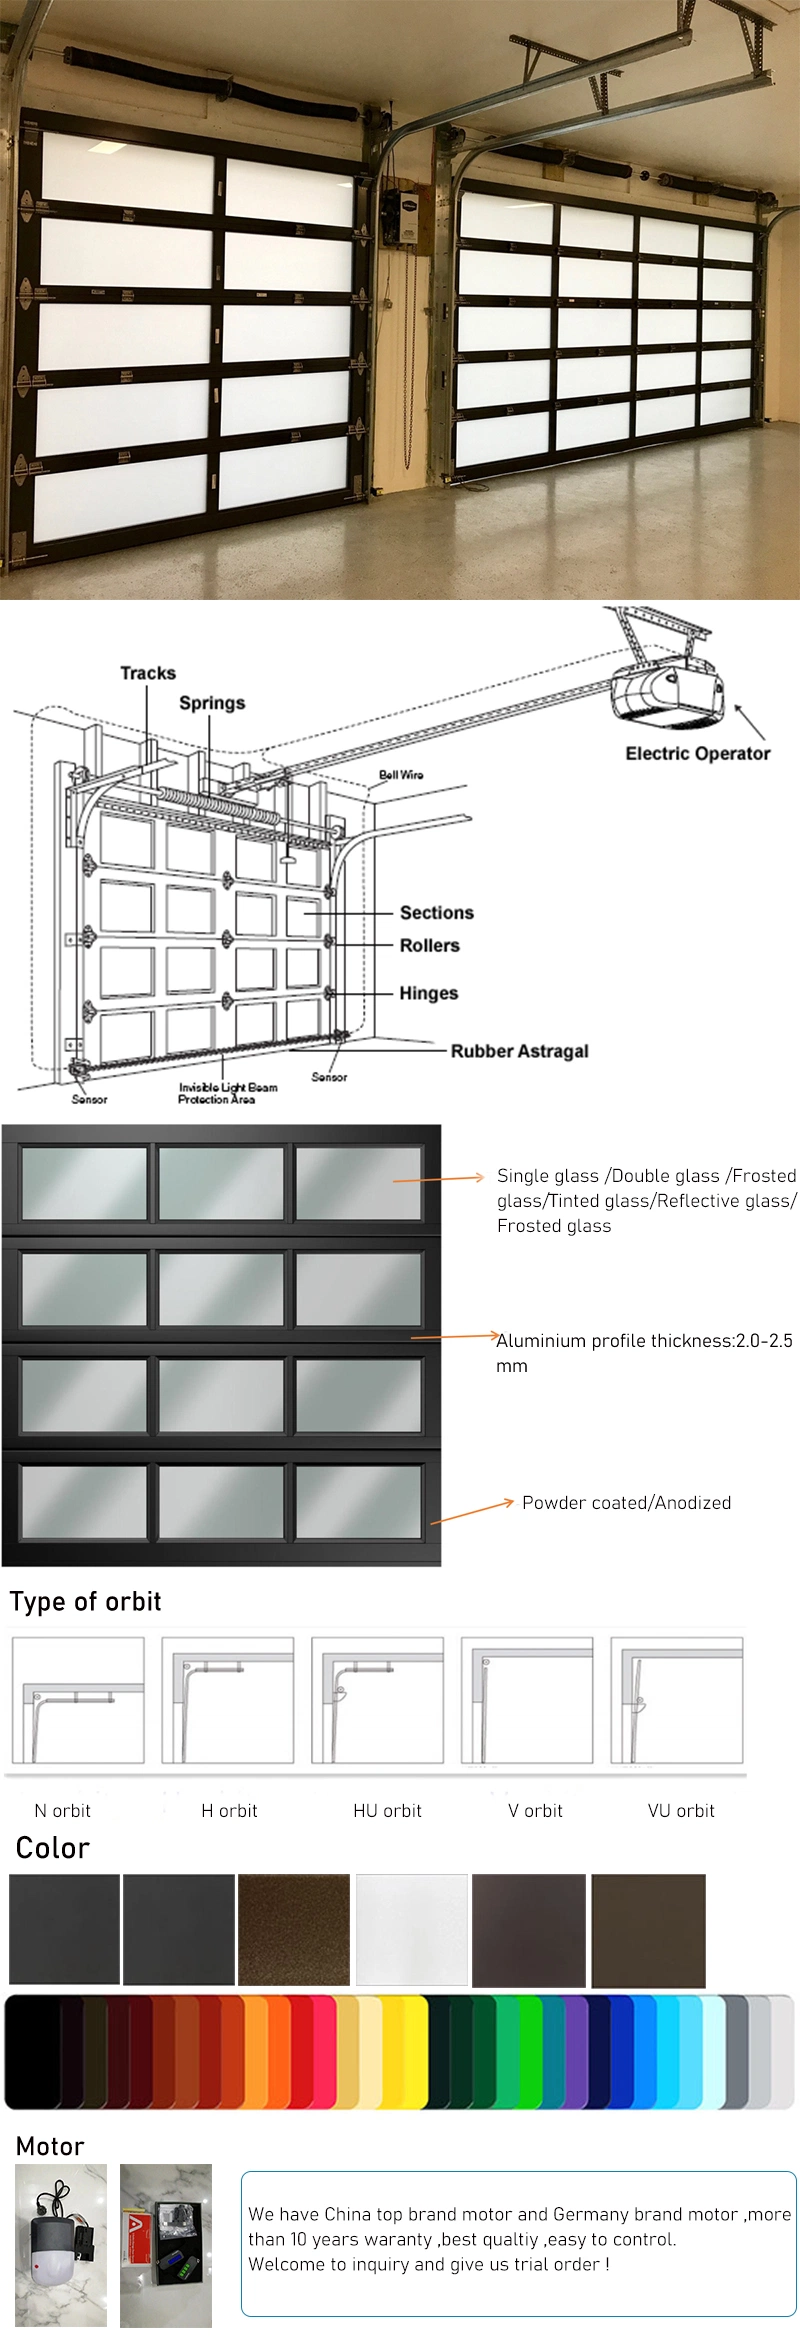 Glass Garage Door Aluminum Panel Profile for Full View Garage Door